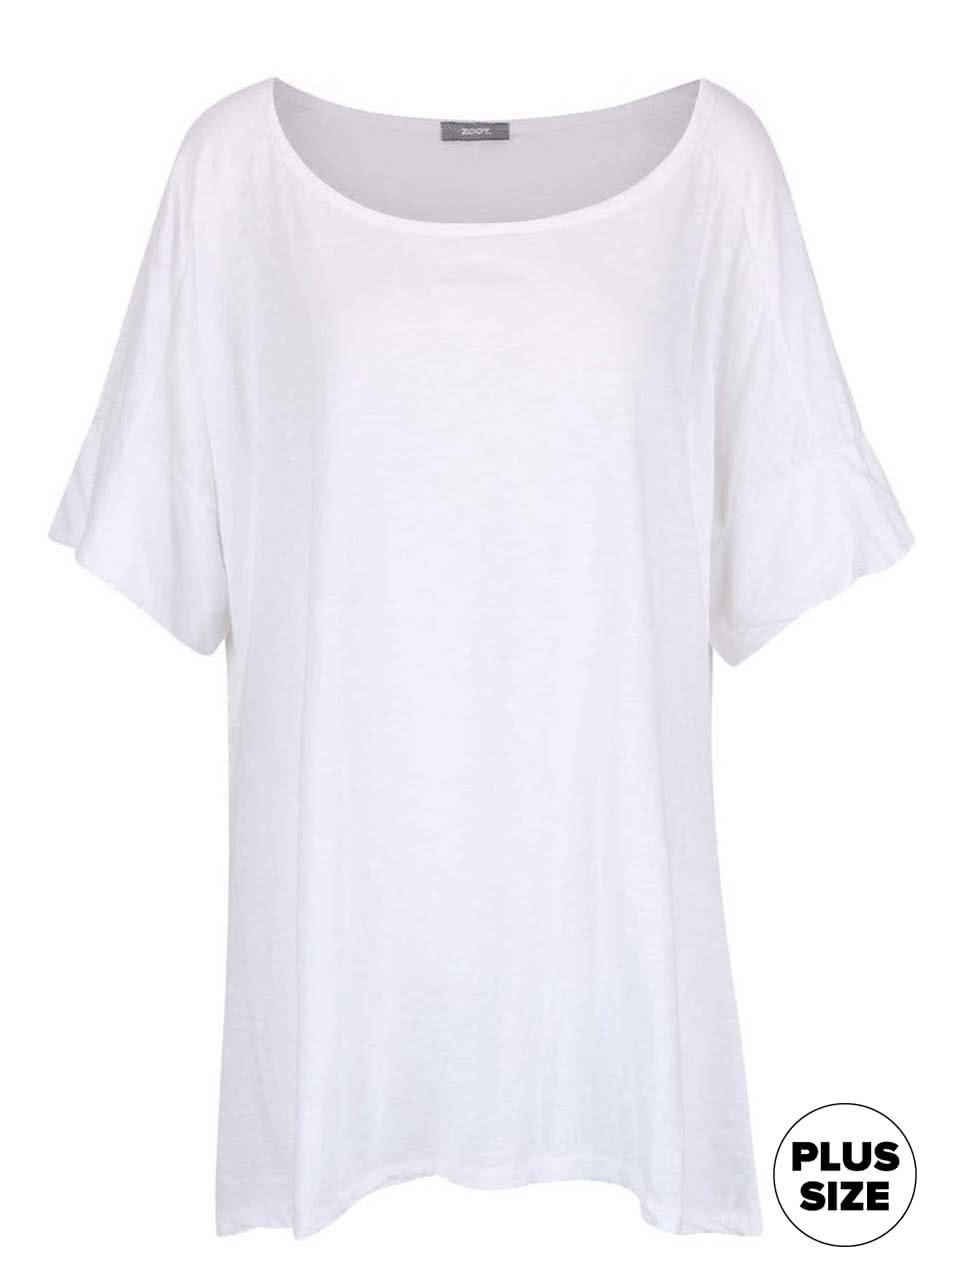 Bílé dámské volnější tričko s krátkým rukávem ZOOT simple